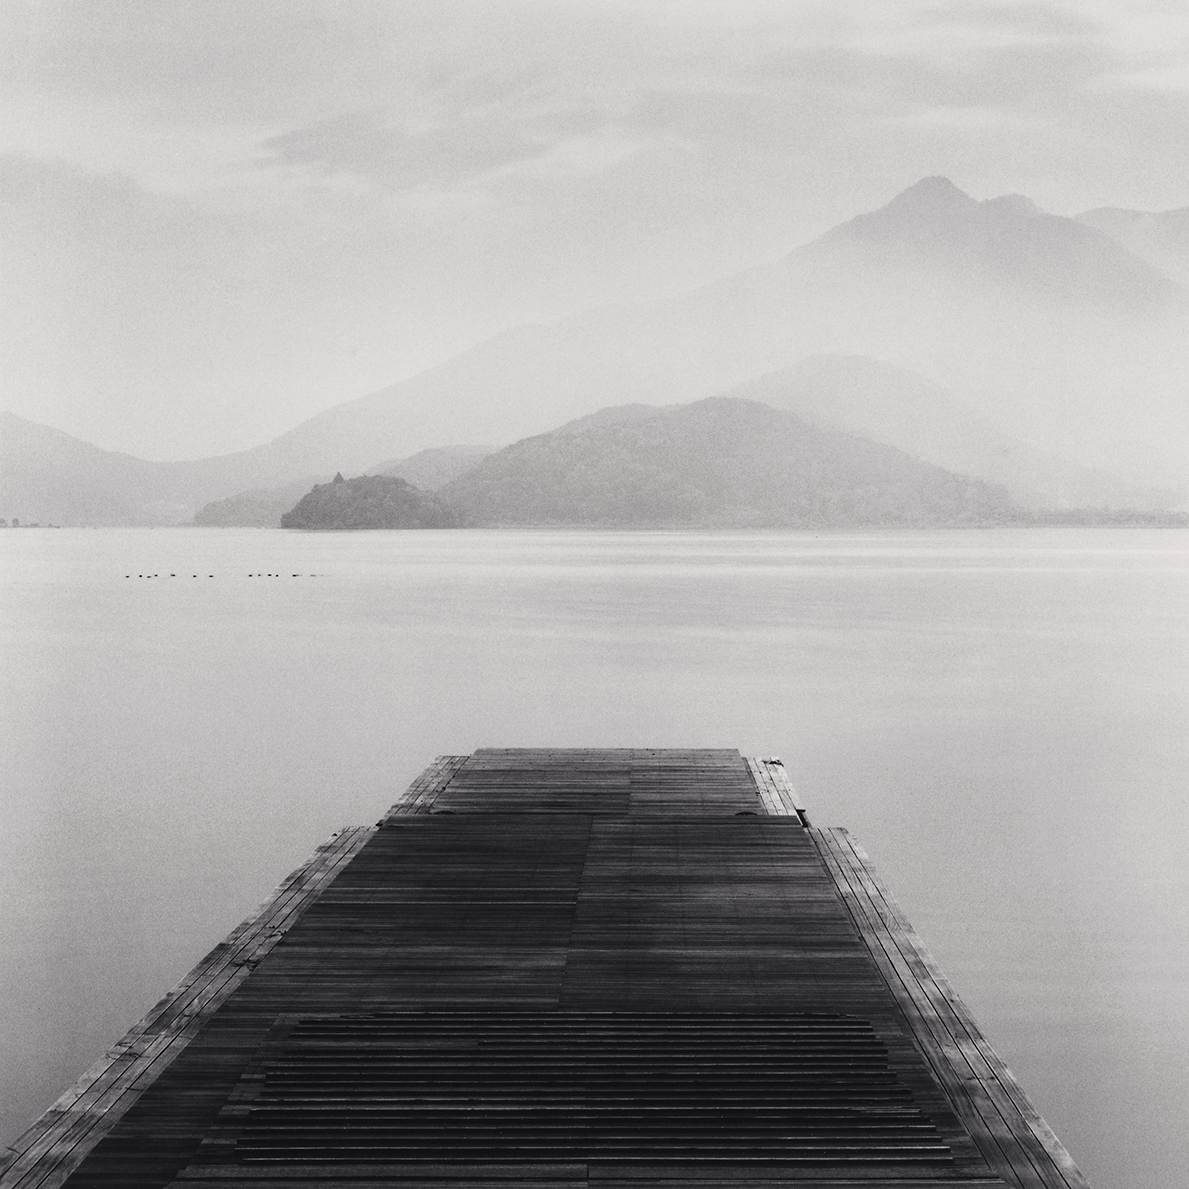 Boat Ramp, Lake Kawaguchi, Honshu, Japan. 2001